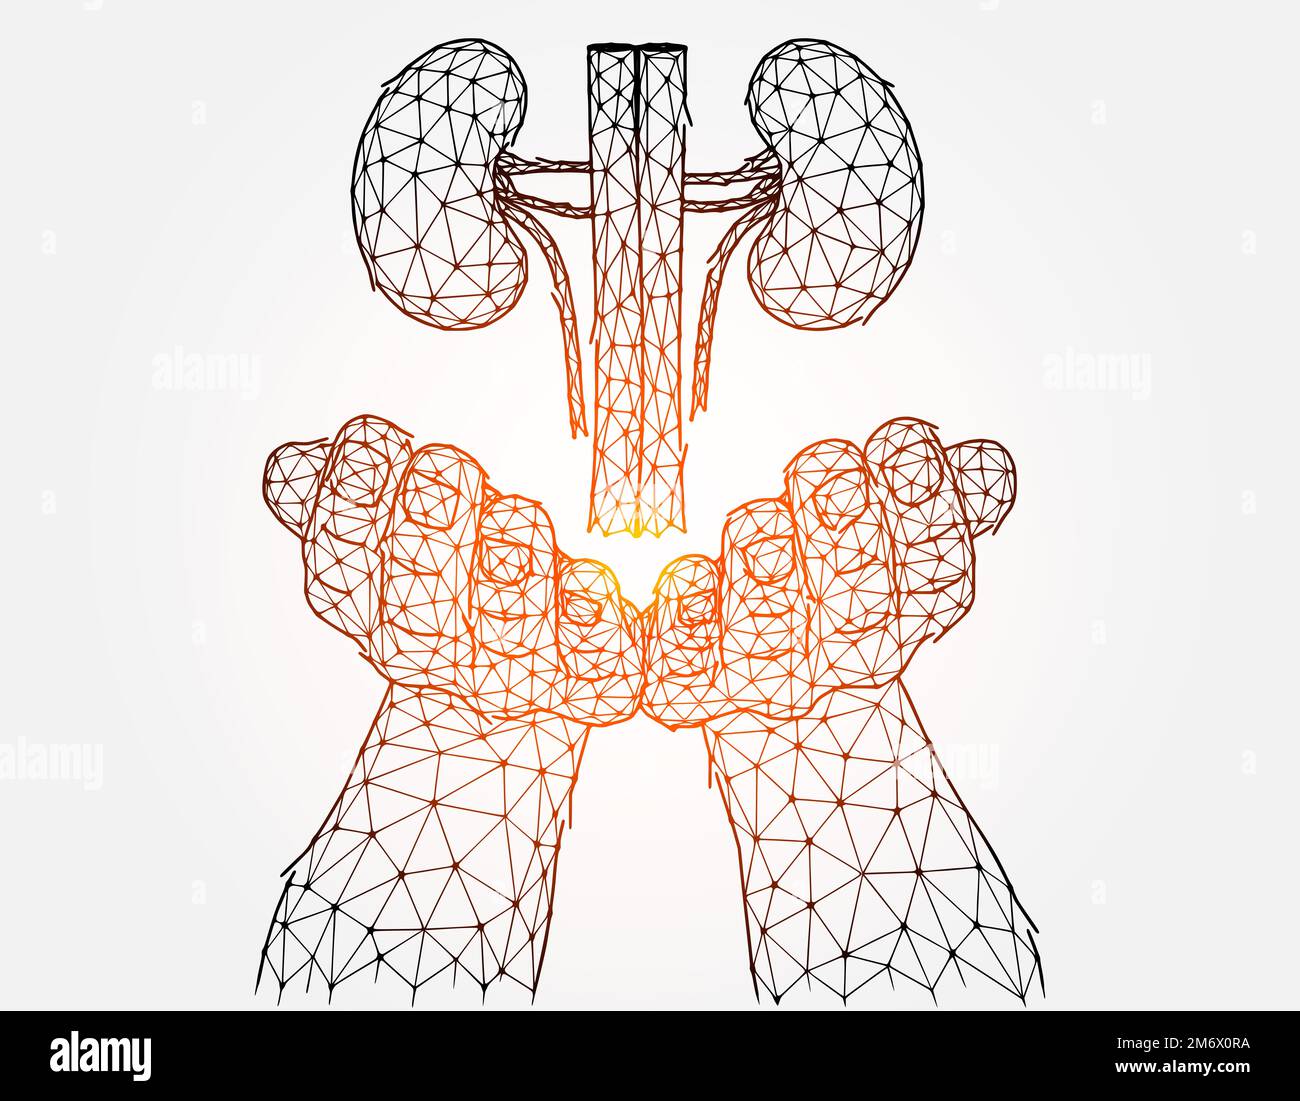 Illustration vectorielle polygonale d'une main avec des reins humains. Concept de don d'organes. Banque D'Images